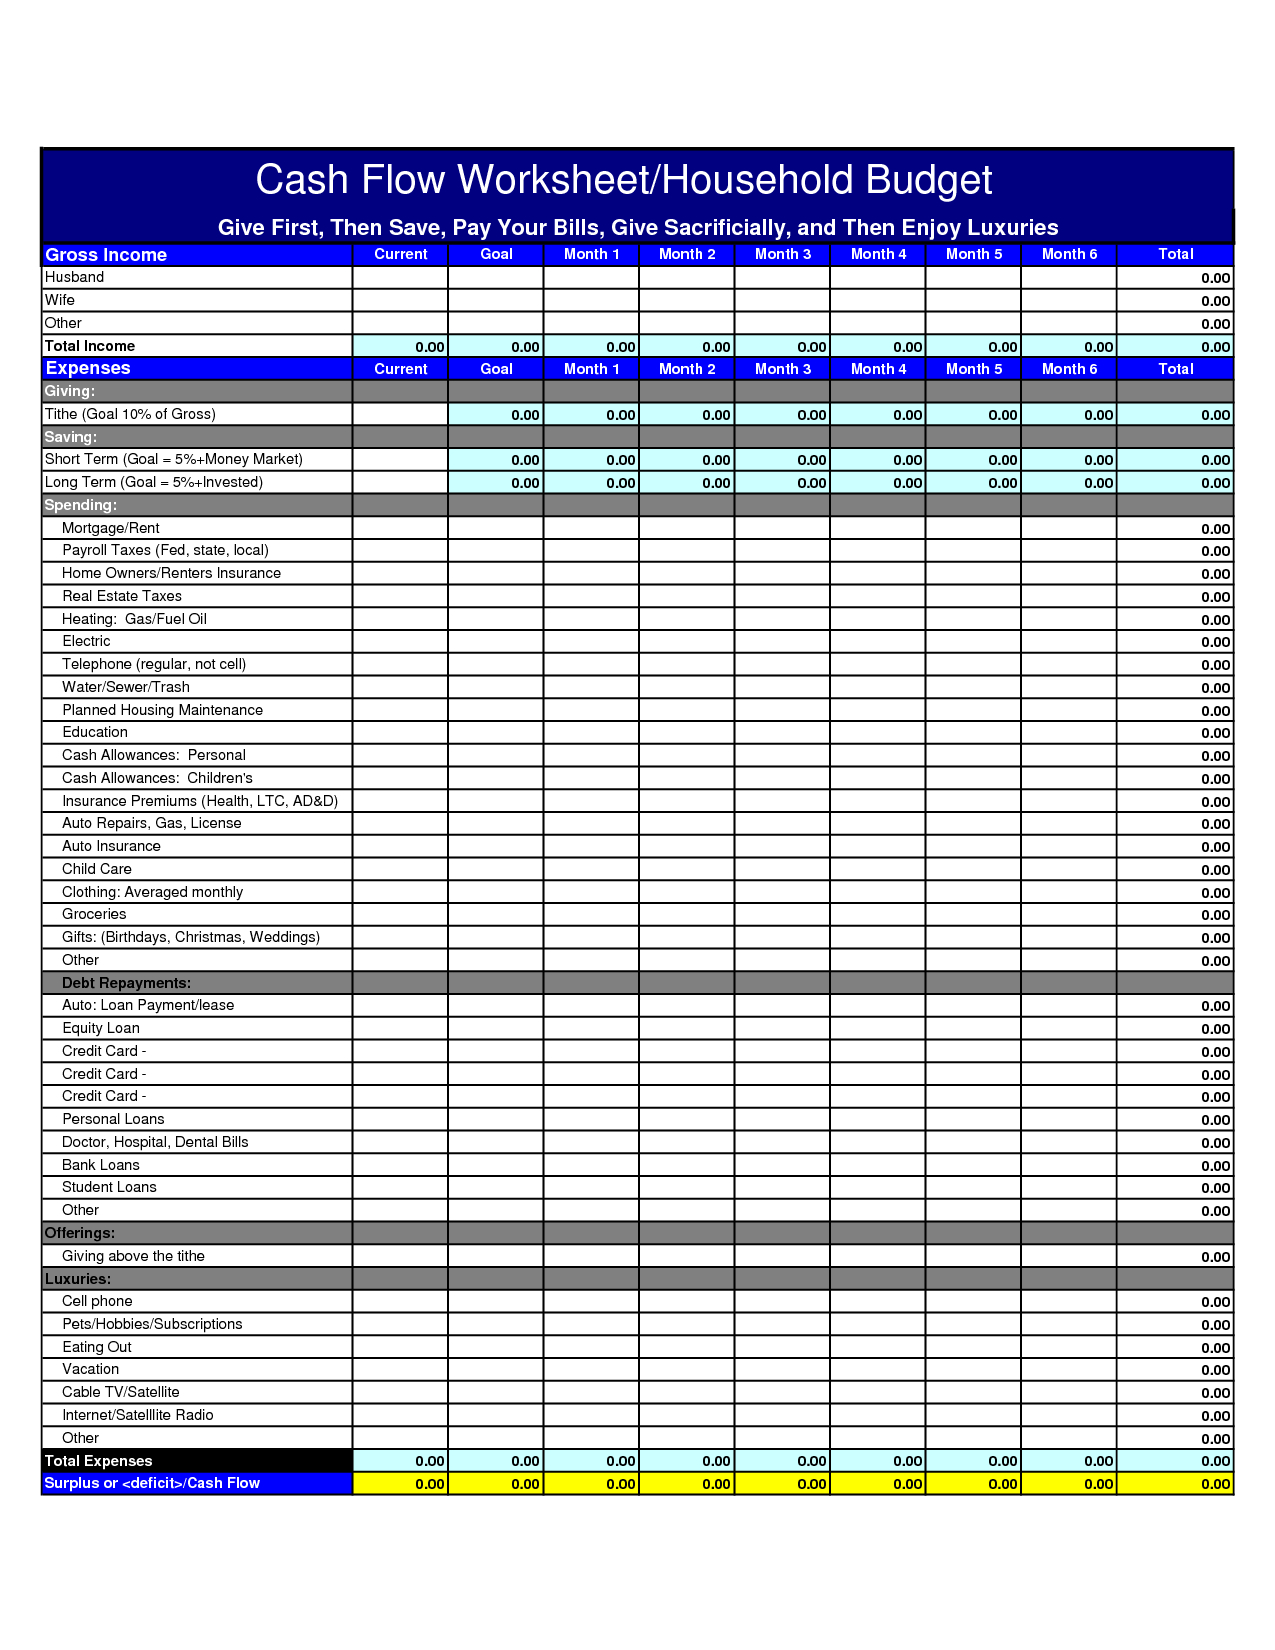 Cash Flow Budget Spreadsheet Within Cash Flow Budget Worksheet Excel 5 Elsik Blue Cetane Db